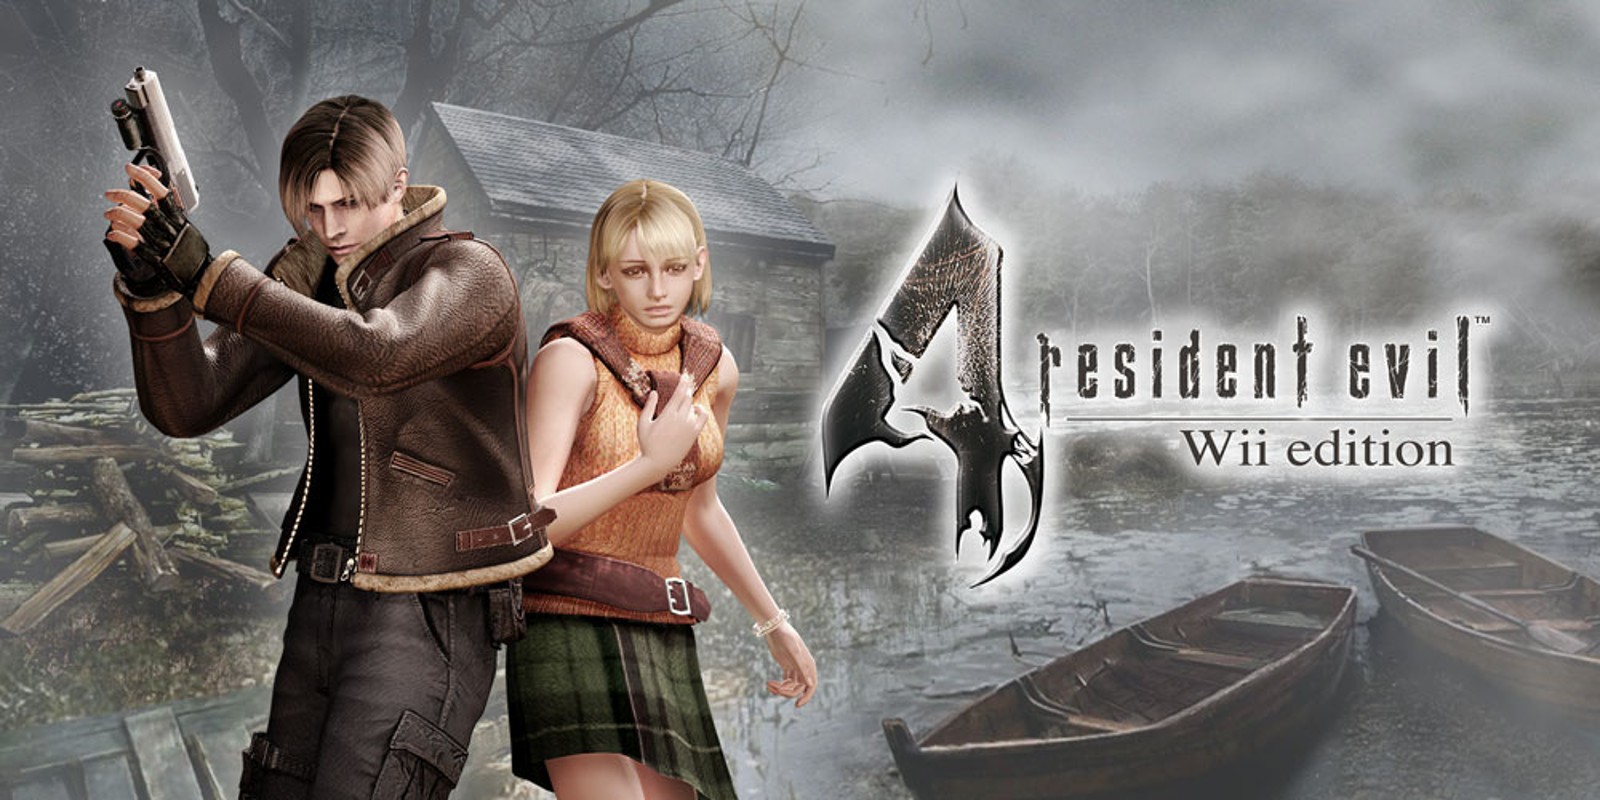 Прохождение игры Resident Evil 4 - Ultimate HD Edition # 22 (Русская версия игры) PC - Ver. HD Full.